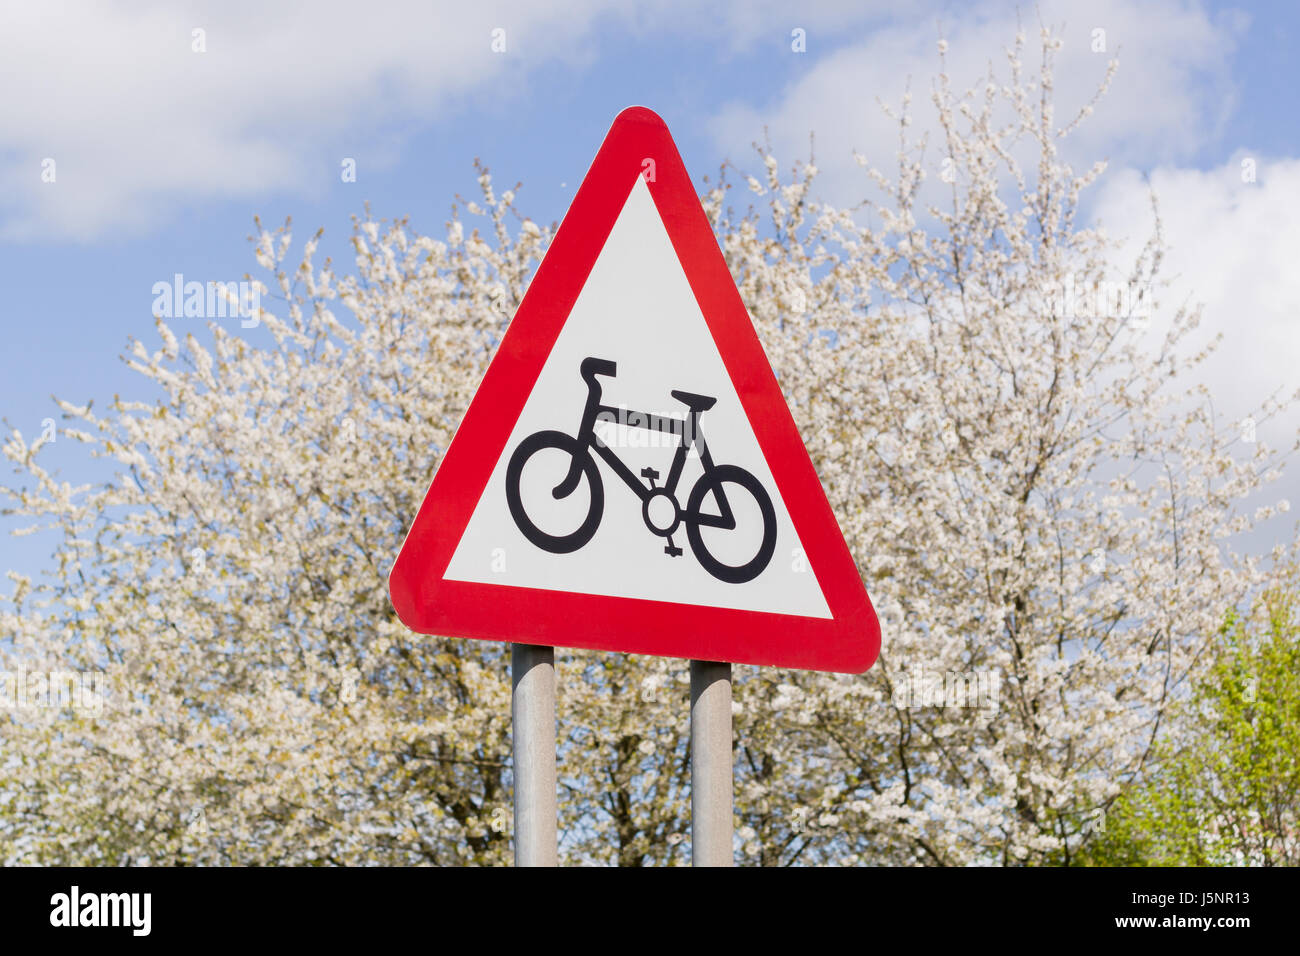 Fahrrad Route Zeichen mit blauem Himmel und Blüten im Hintergrund ein brauchbares Konzept für gesunde sauber oder nachhaltigen Transport Themen Stockfoto